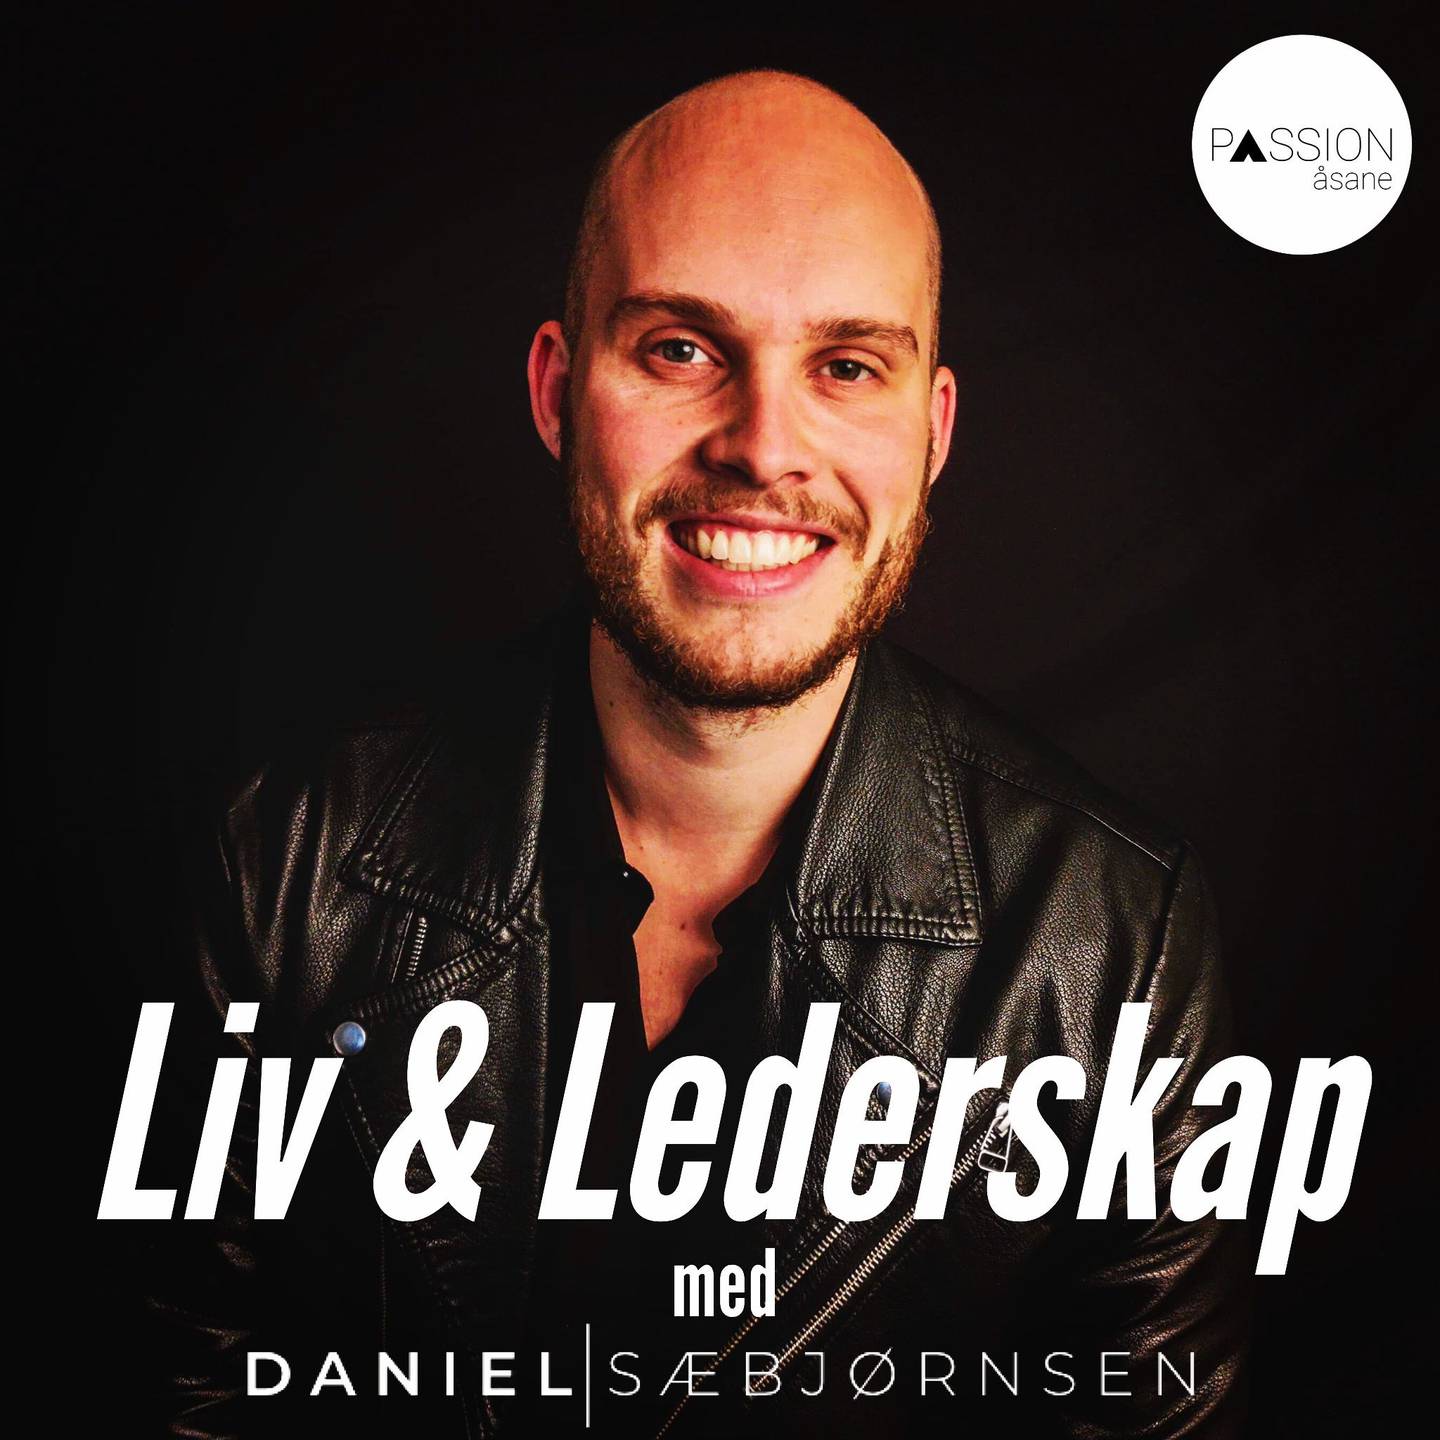 Liv & lederskap, Daniel Sæbjørnsen